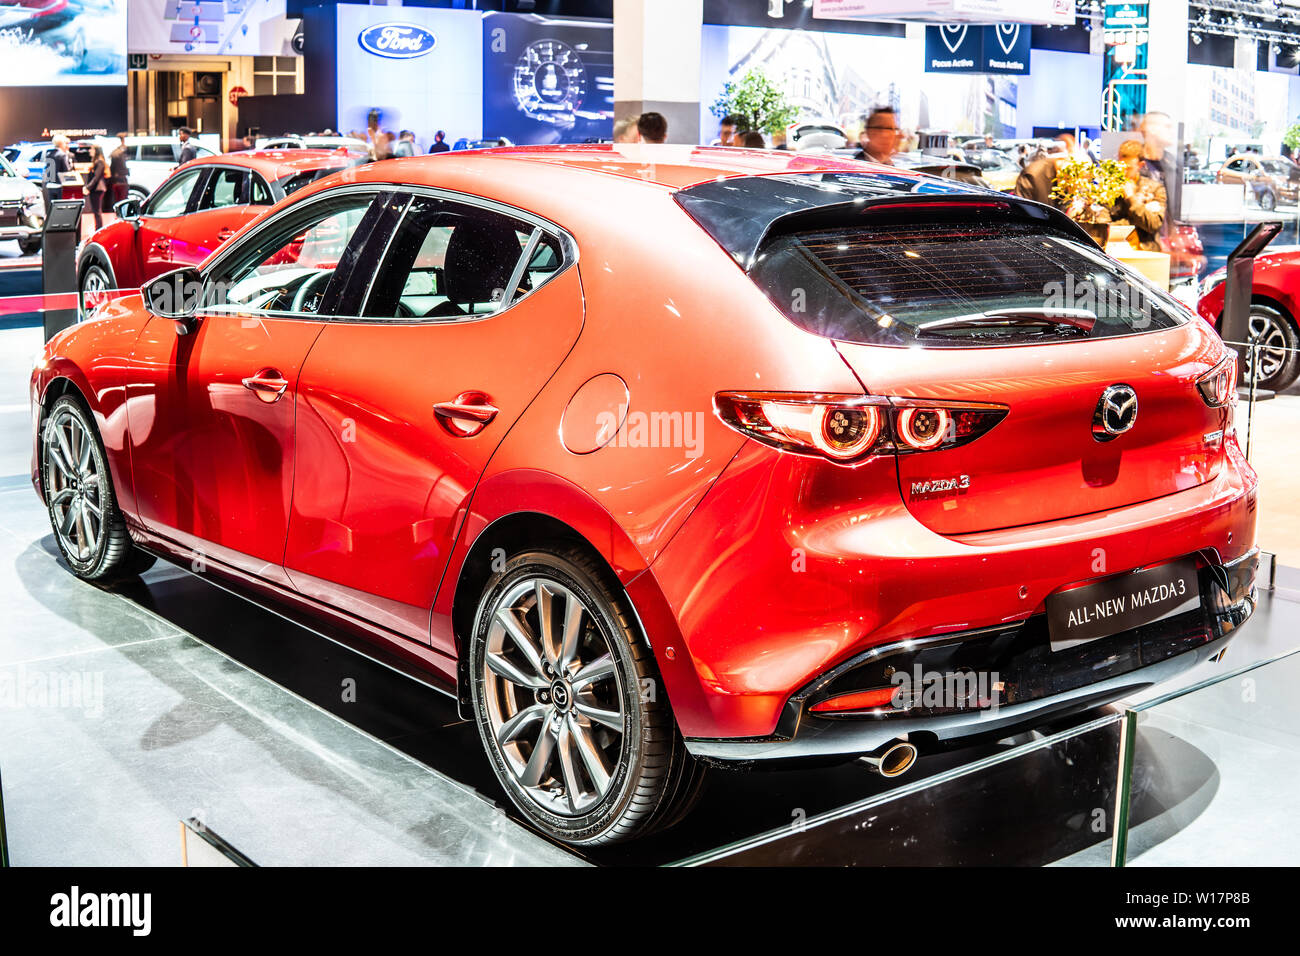 Bruxelles, Belgique, Jan 2019 toutes les nouvelles Mazda 3 à Bruxelles Salon de l'automobile, quatrième génération, voiture compacte fabriquée au Japon par Mazda Banque D'Images